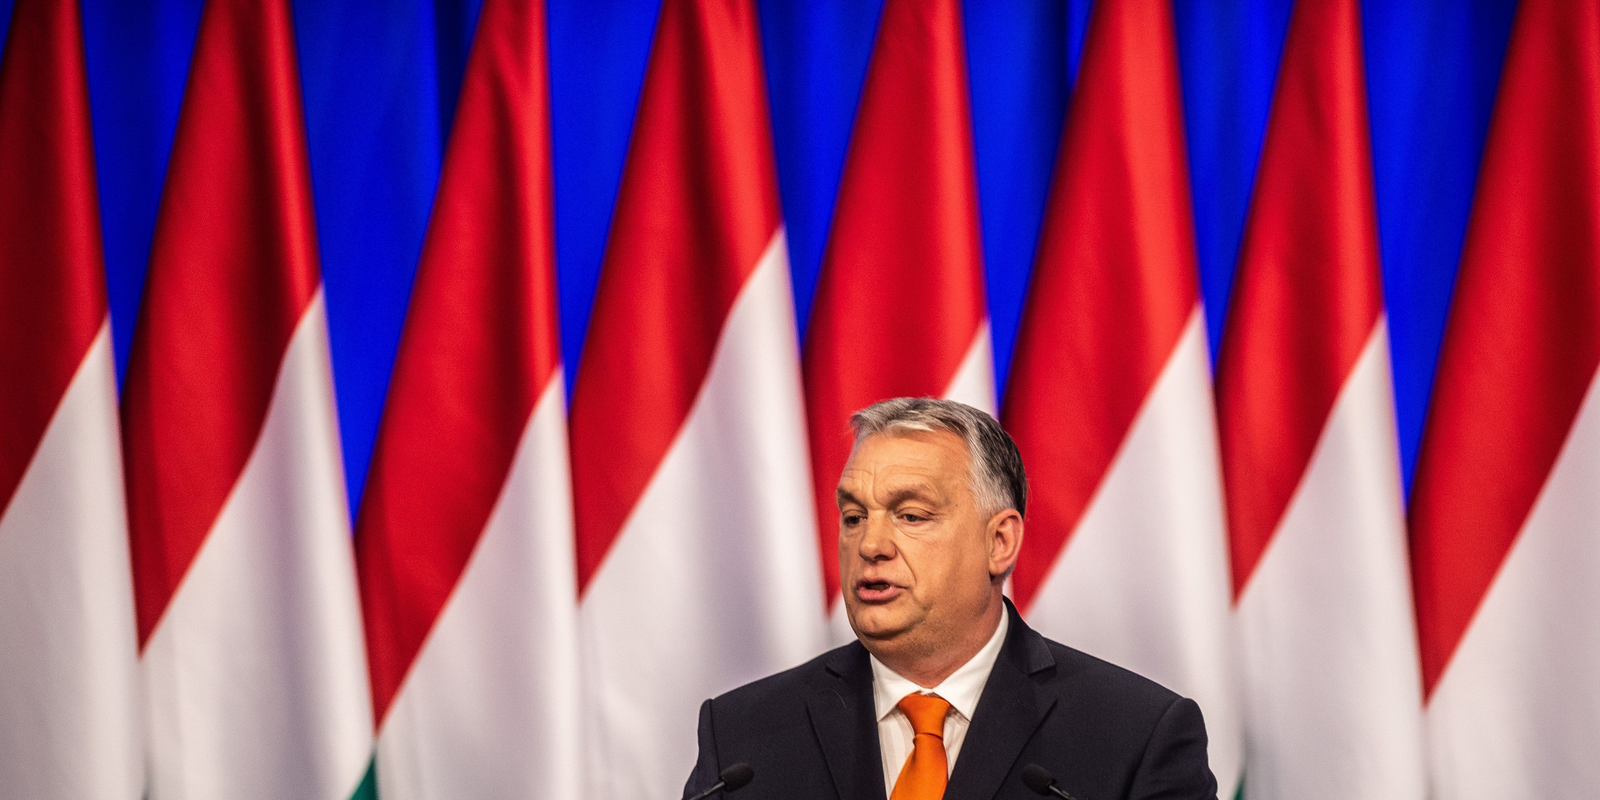 Orbán Viktor évértékelője: miről beszélt az elmúlt években? – ORIGO